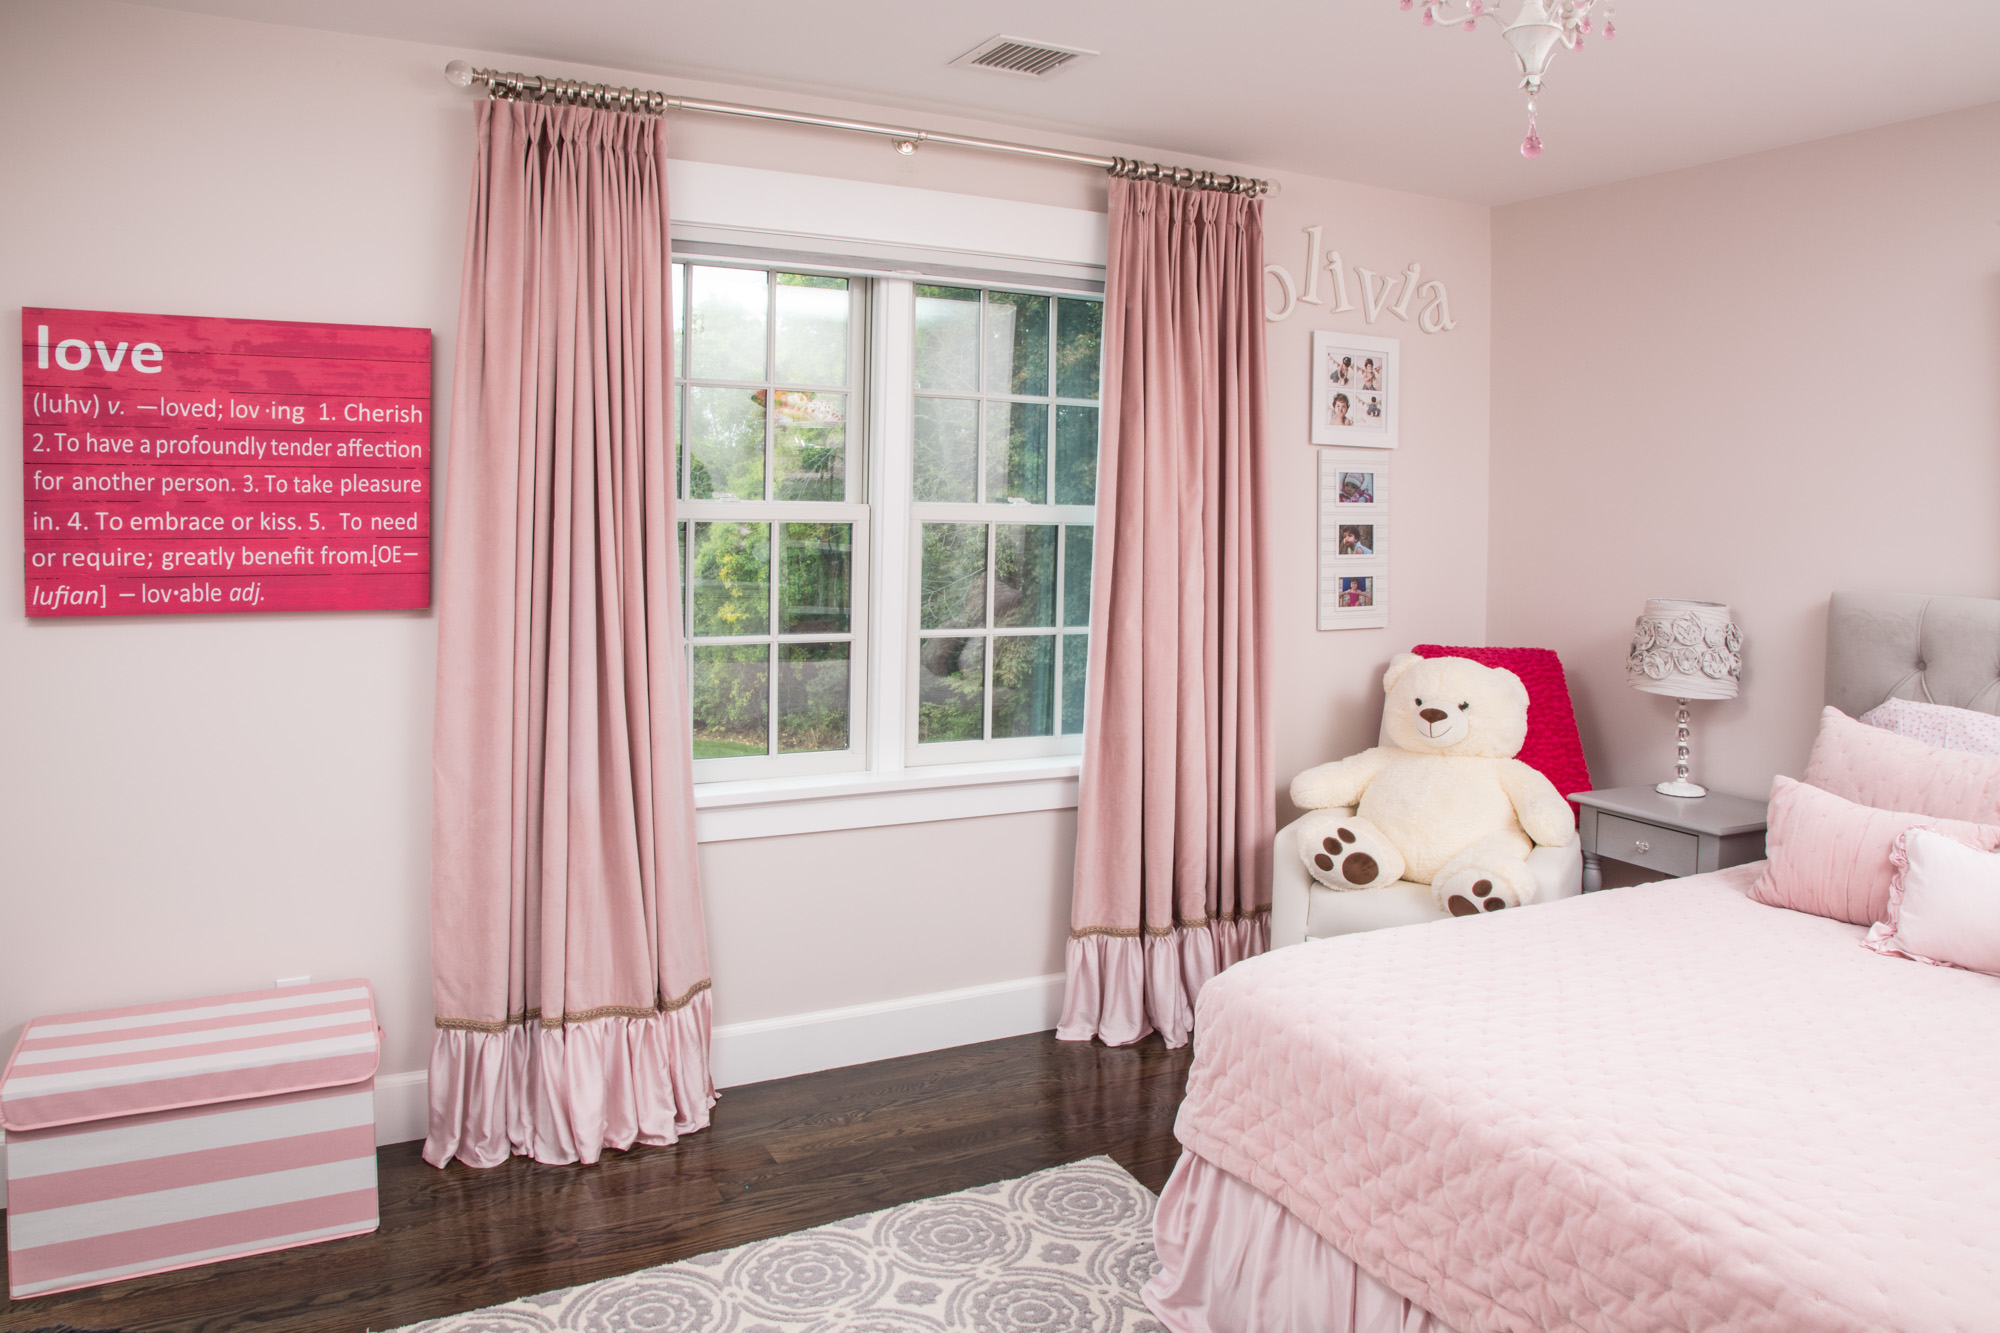 Rèm hồng pastel cho phòng ngủ thêm tinh tế, lãng mạn